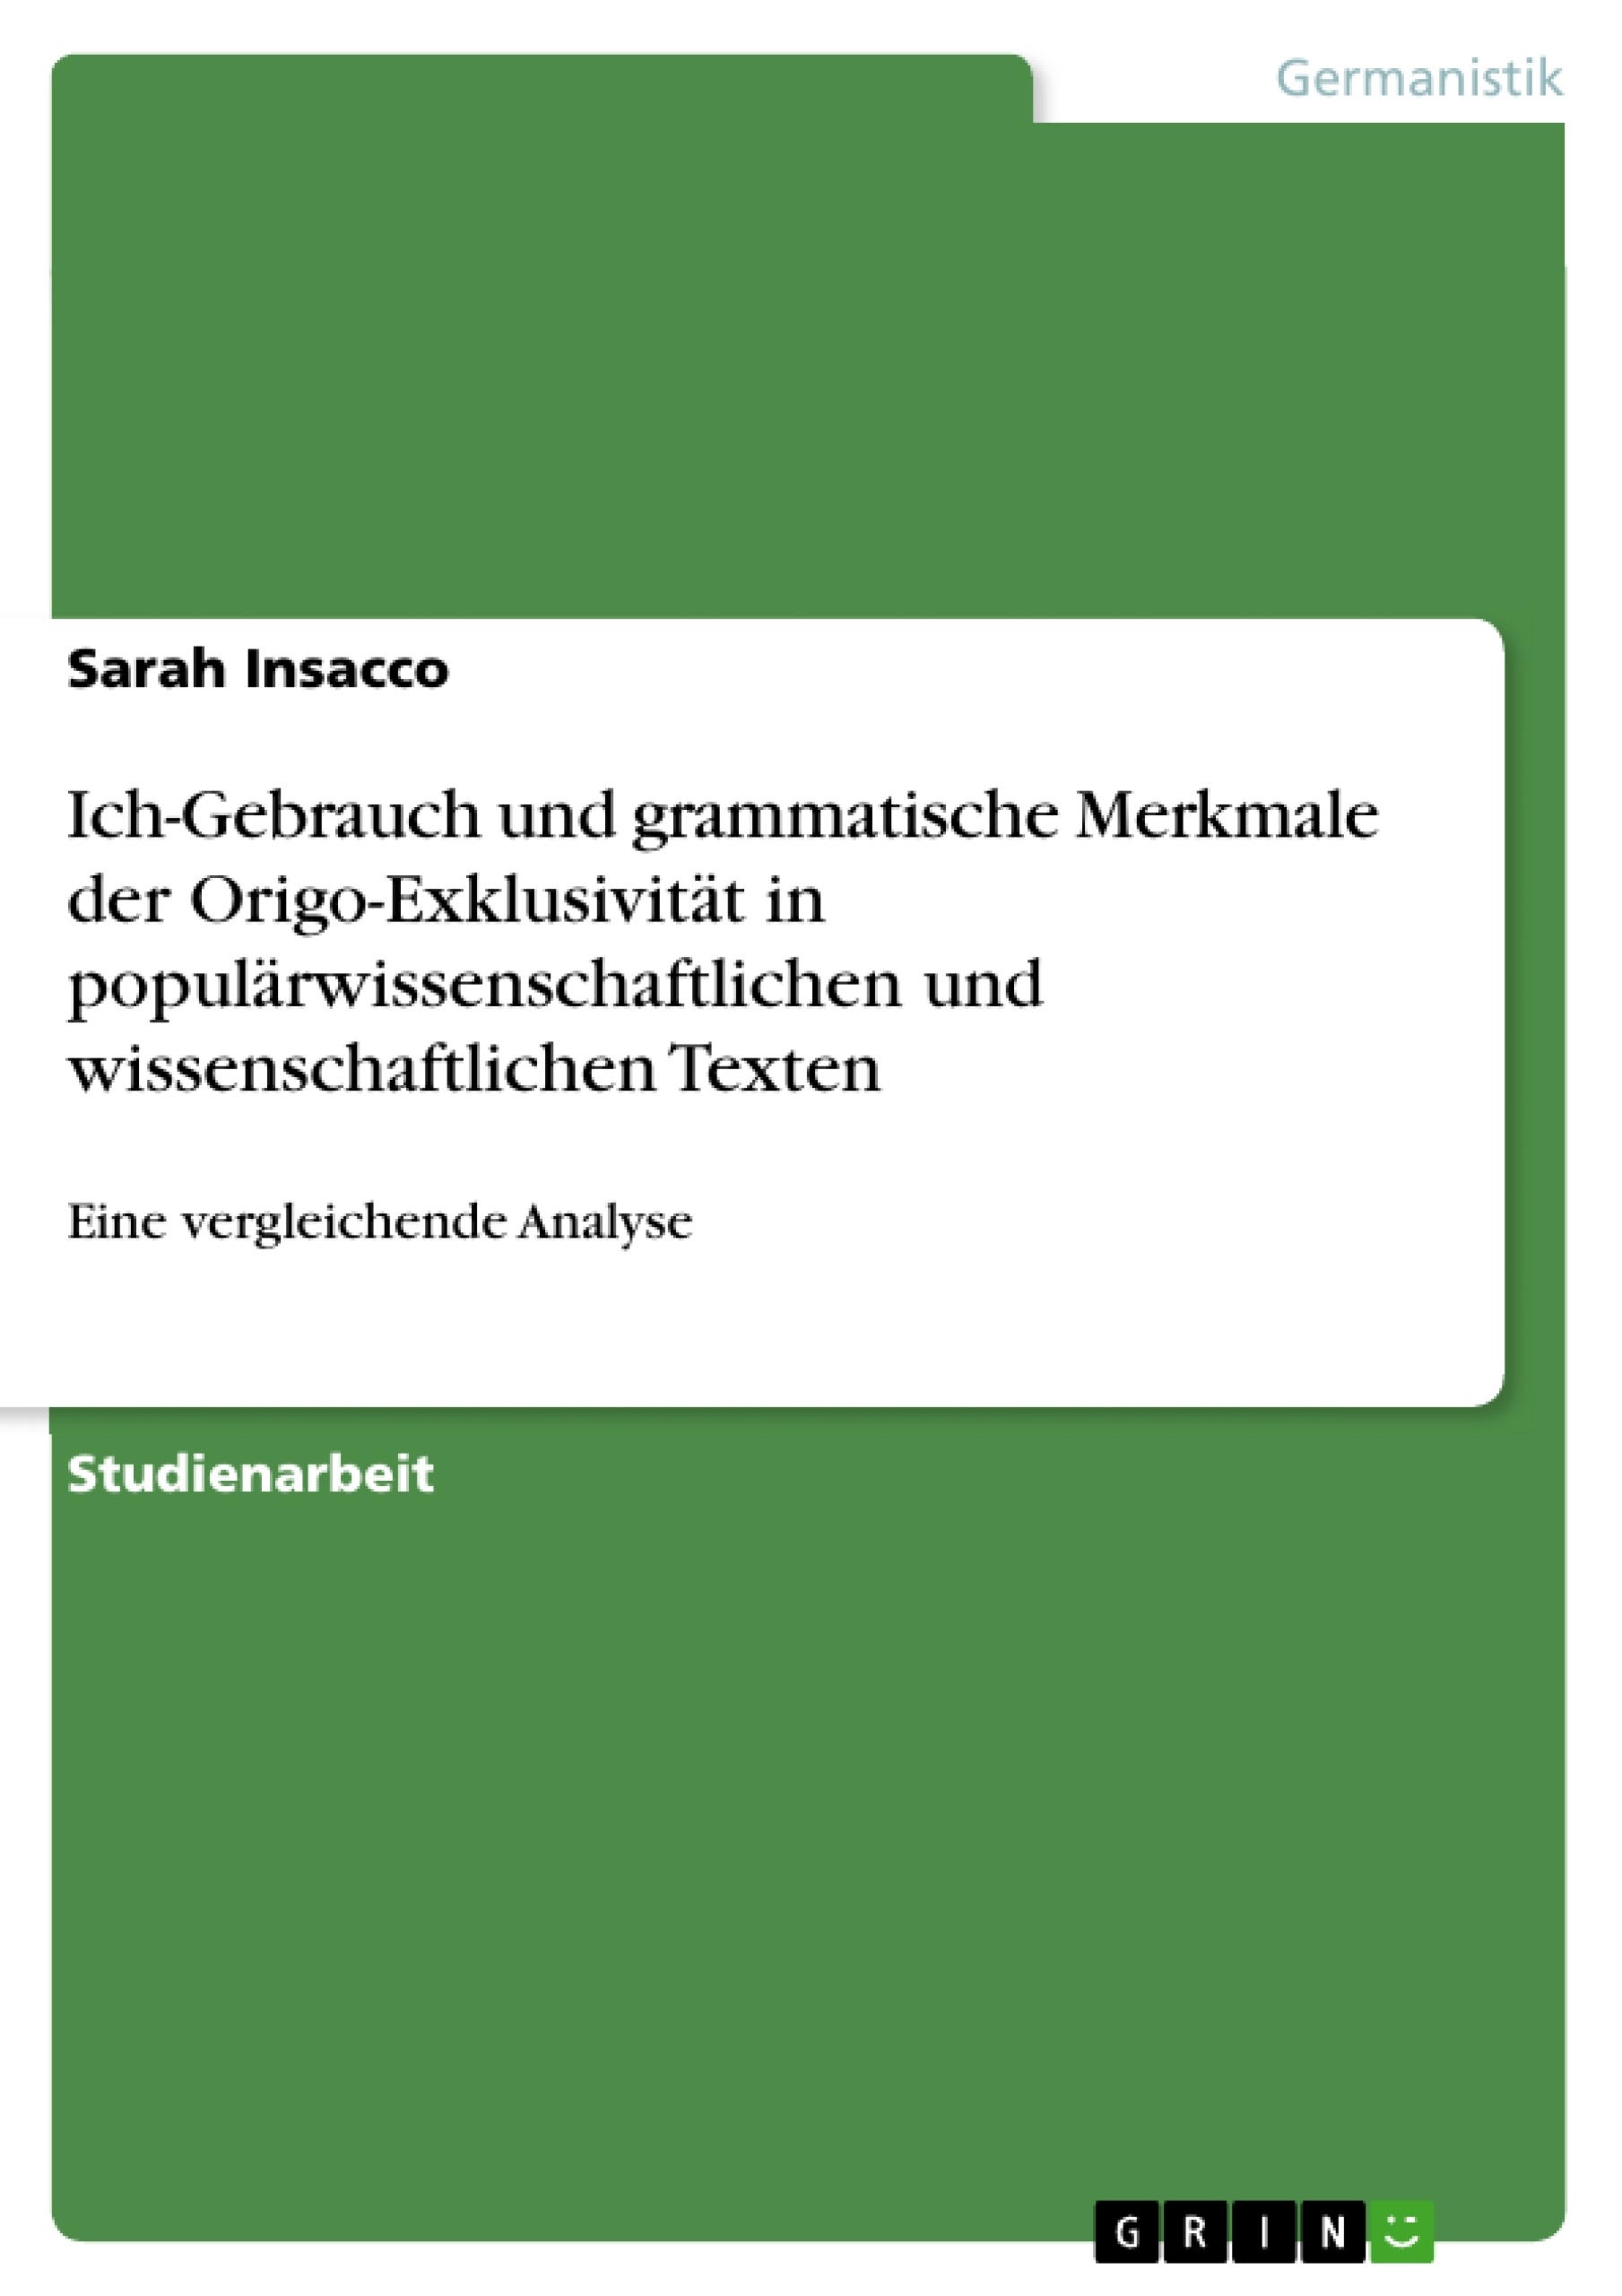 Title: Ich-Gebrauch und grammatische Merkmale der Origo-Exklusivität in populärwissenschaftlichen und wissenschaftlichen Texten